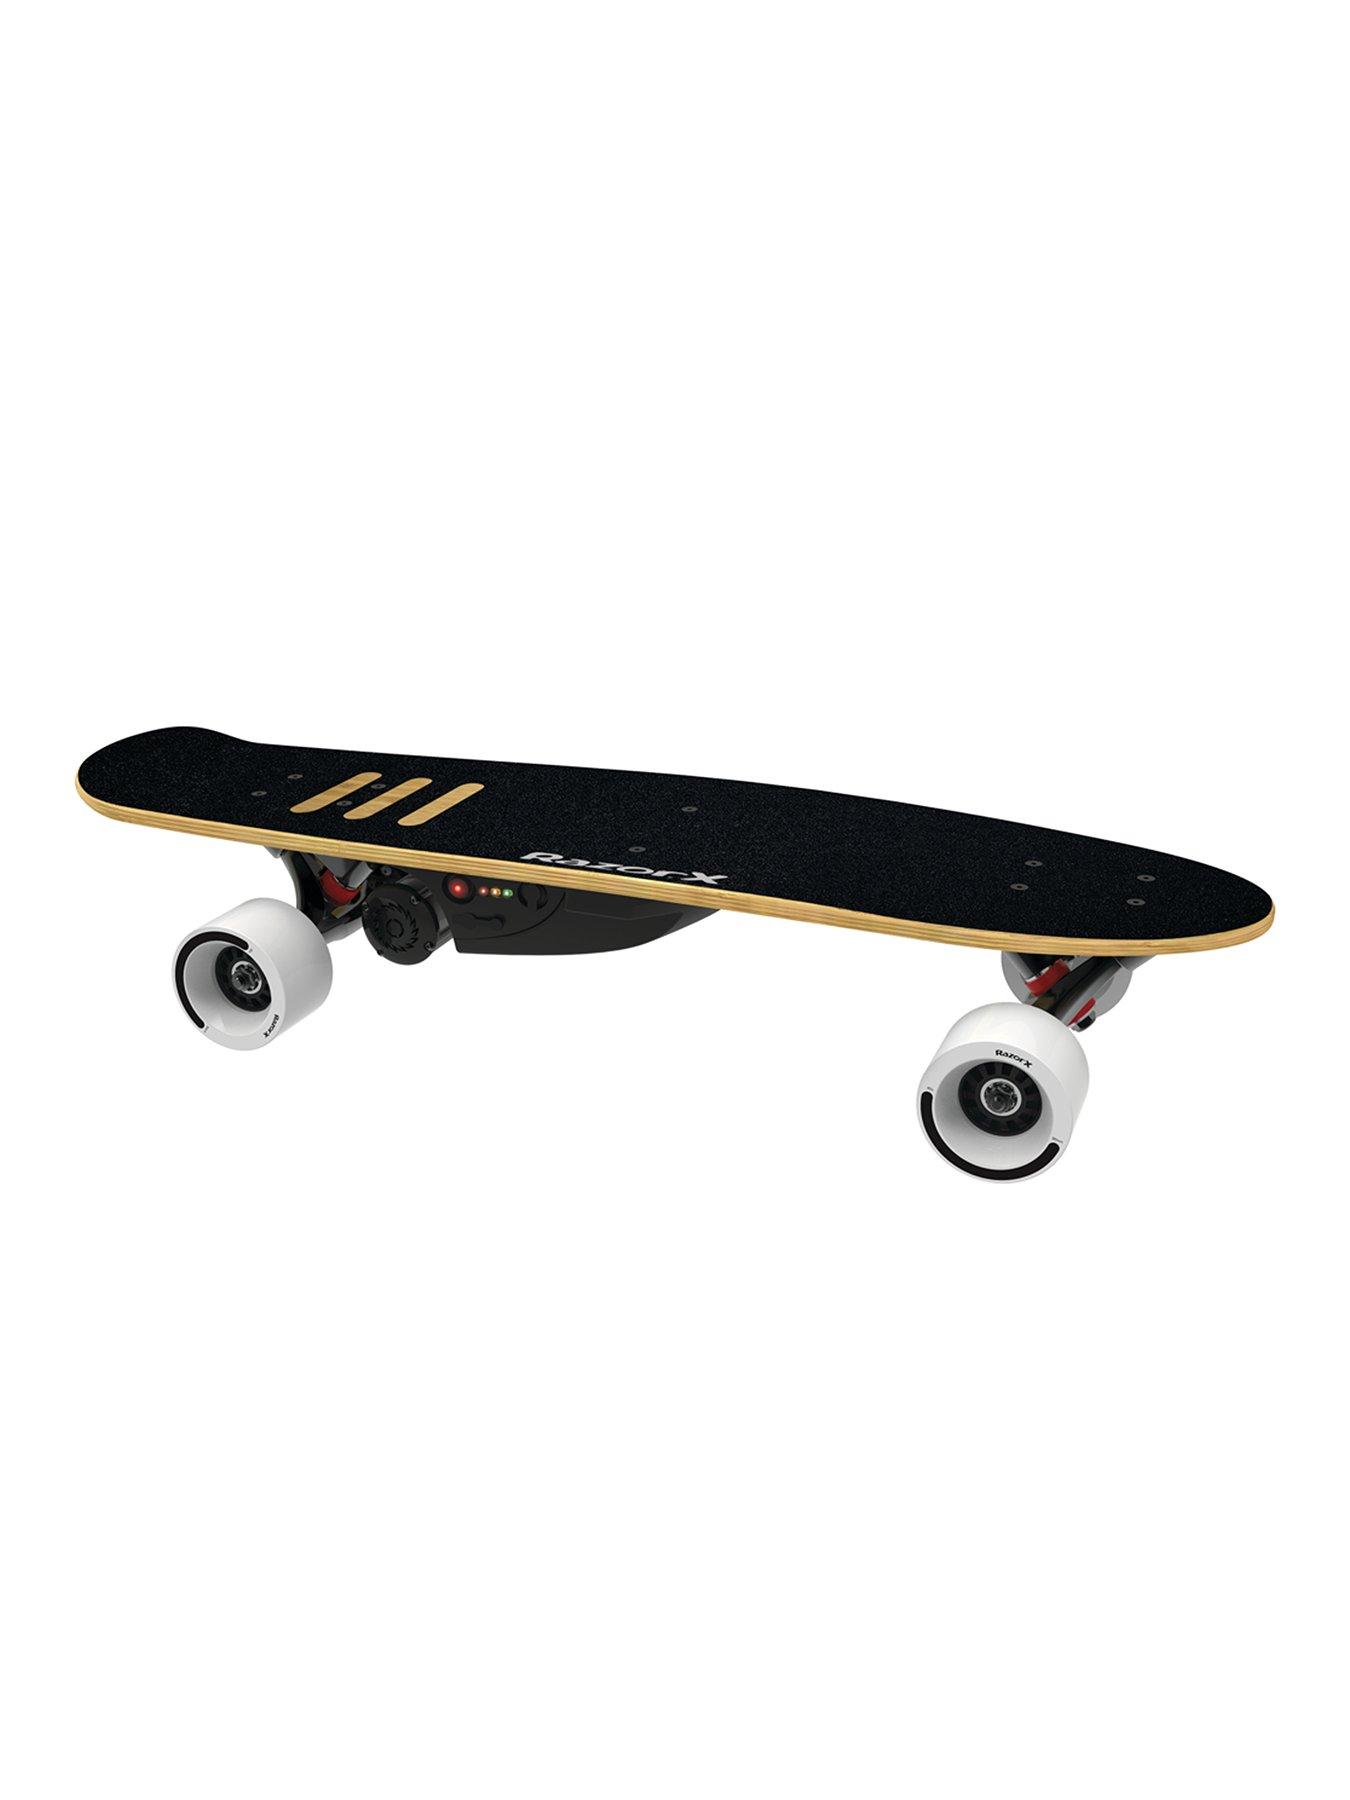 Razor Razorx Cruiser Electric Skateboard For Kids 9+ - Black